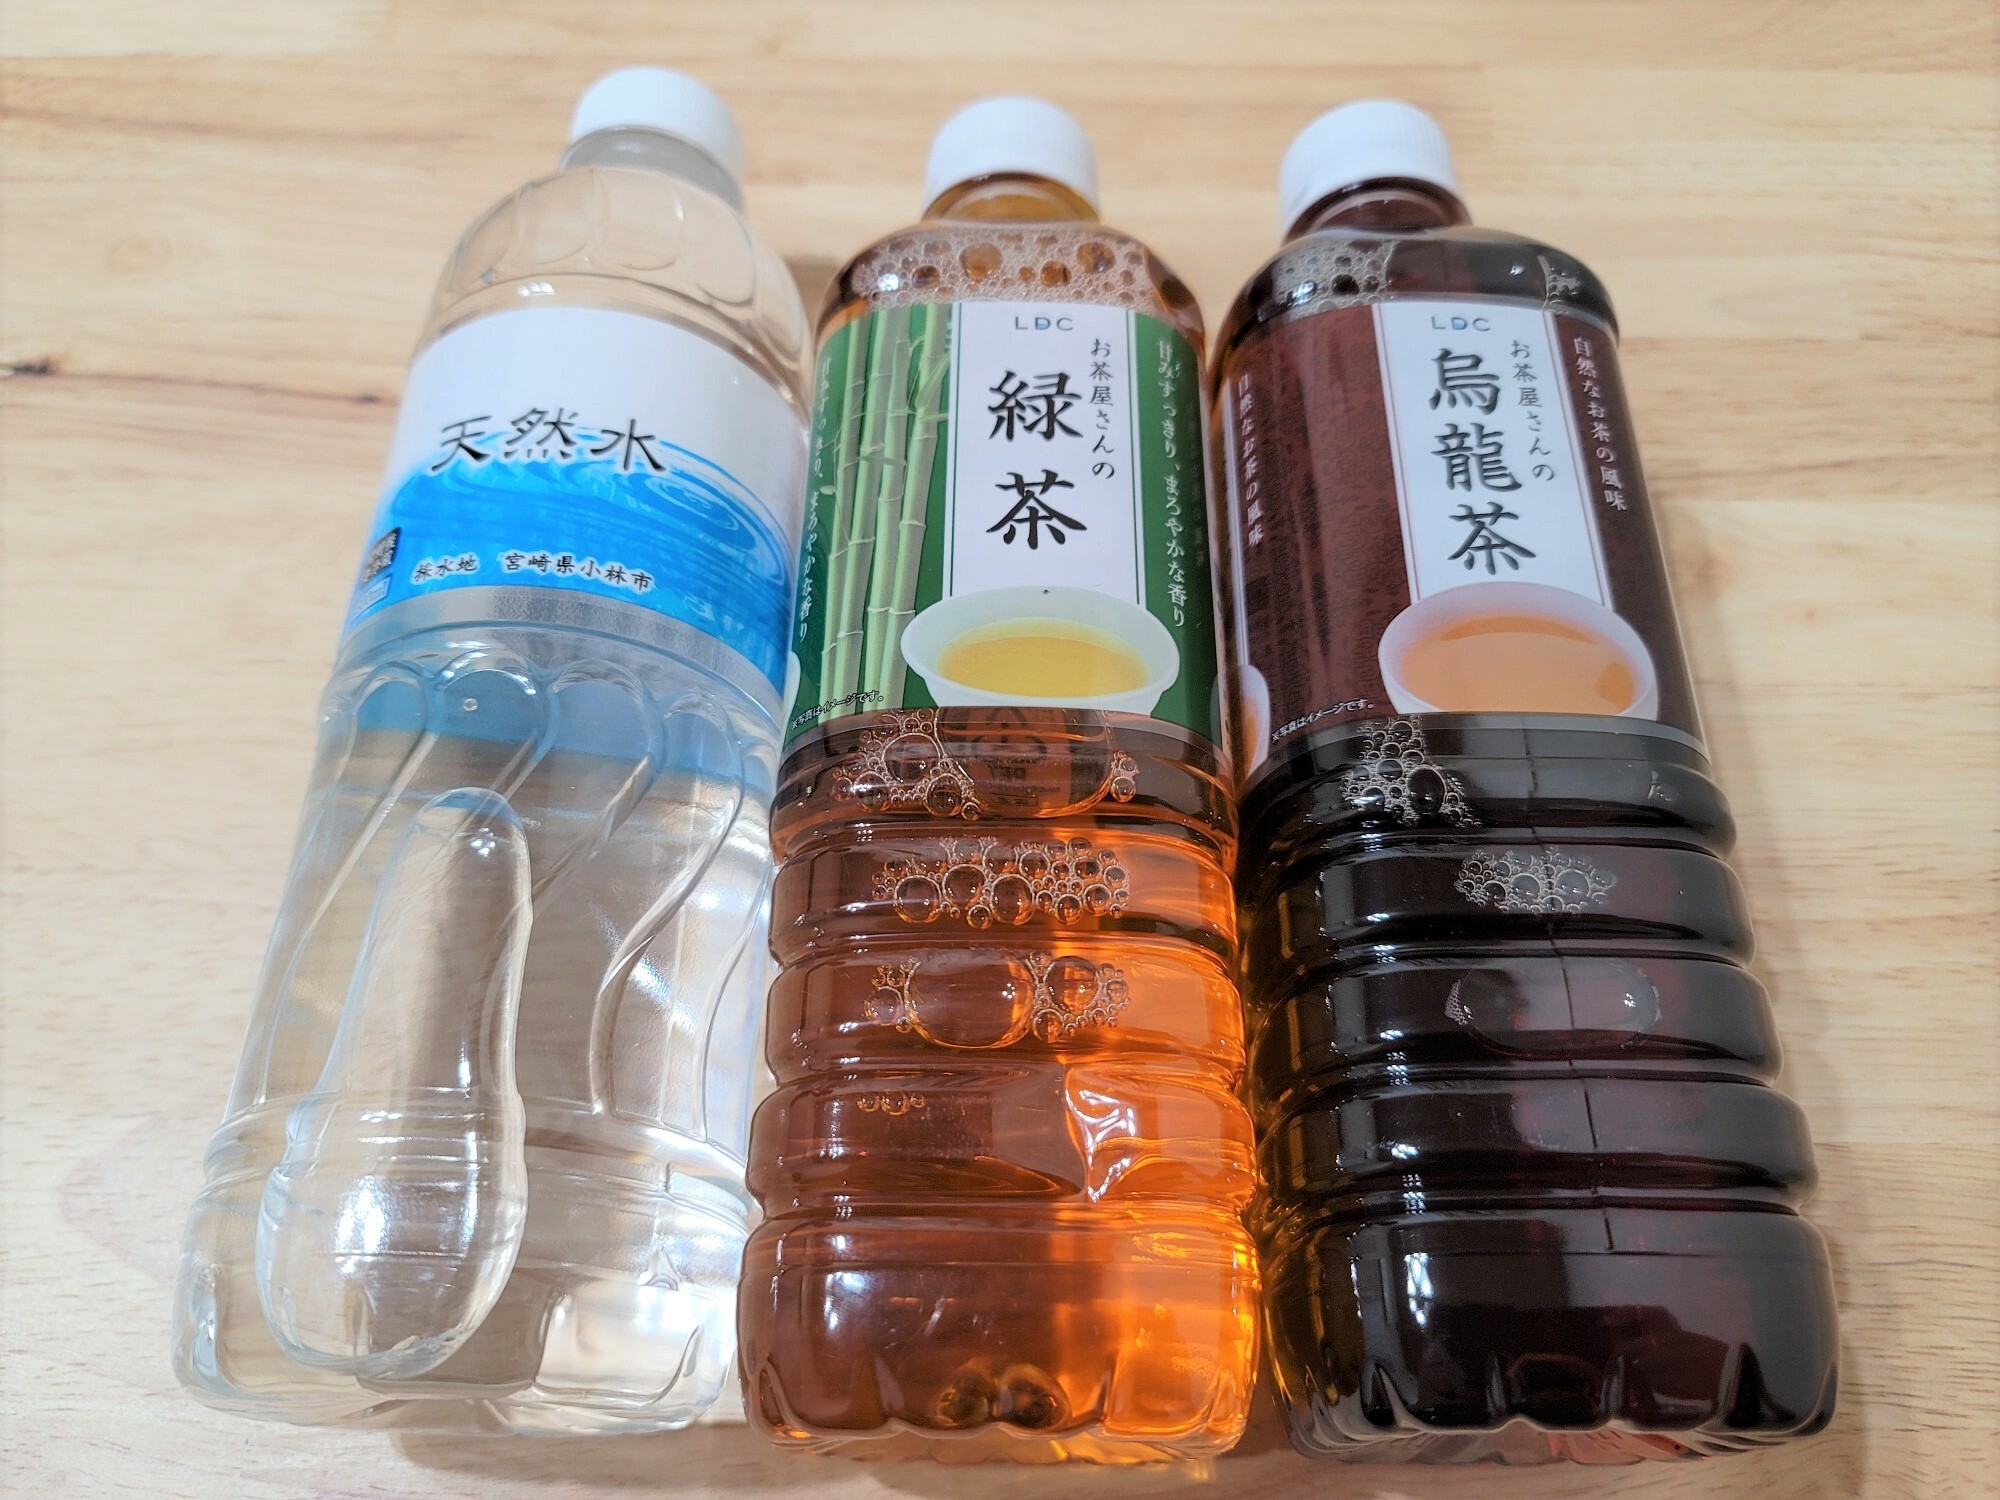 左から「天然水」40円、「緑茶」50円、「ウーロン茶」39円。いずれも500ml